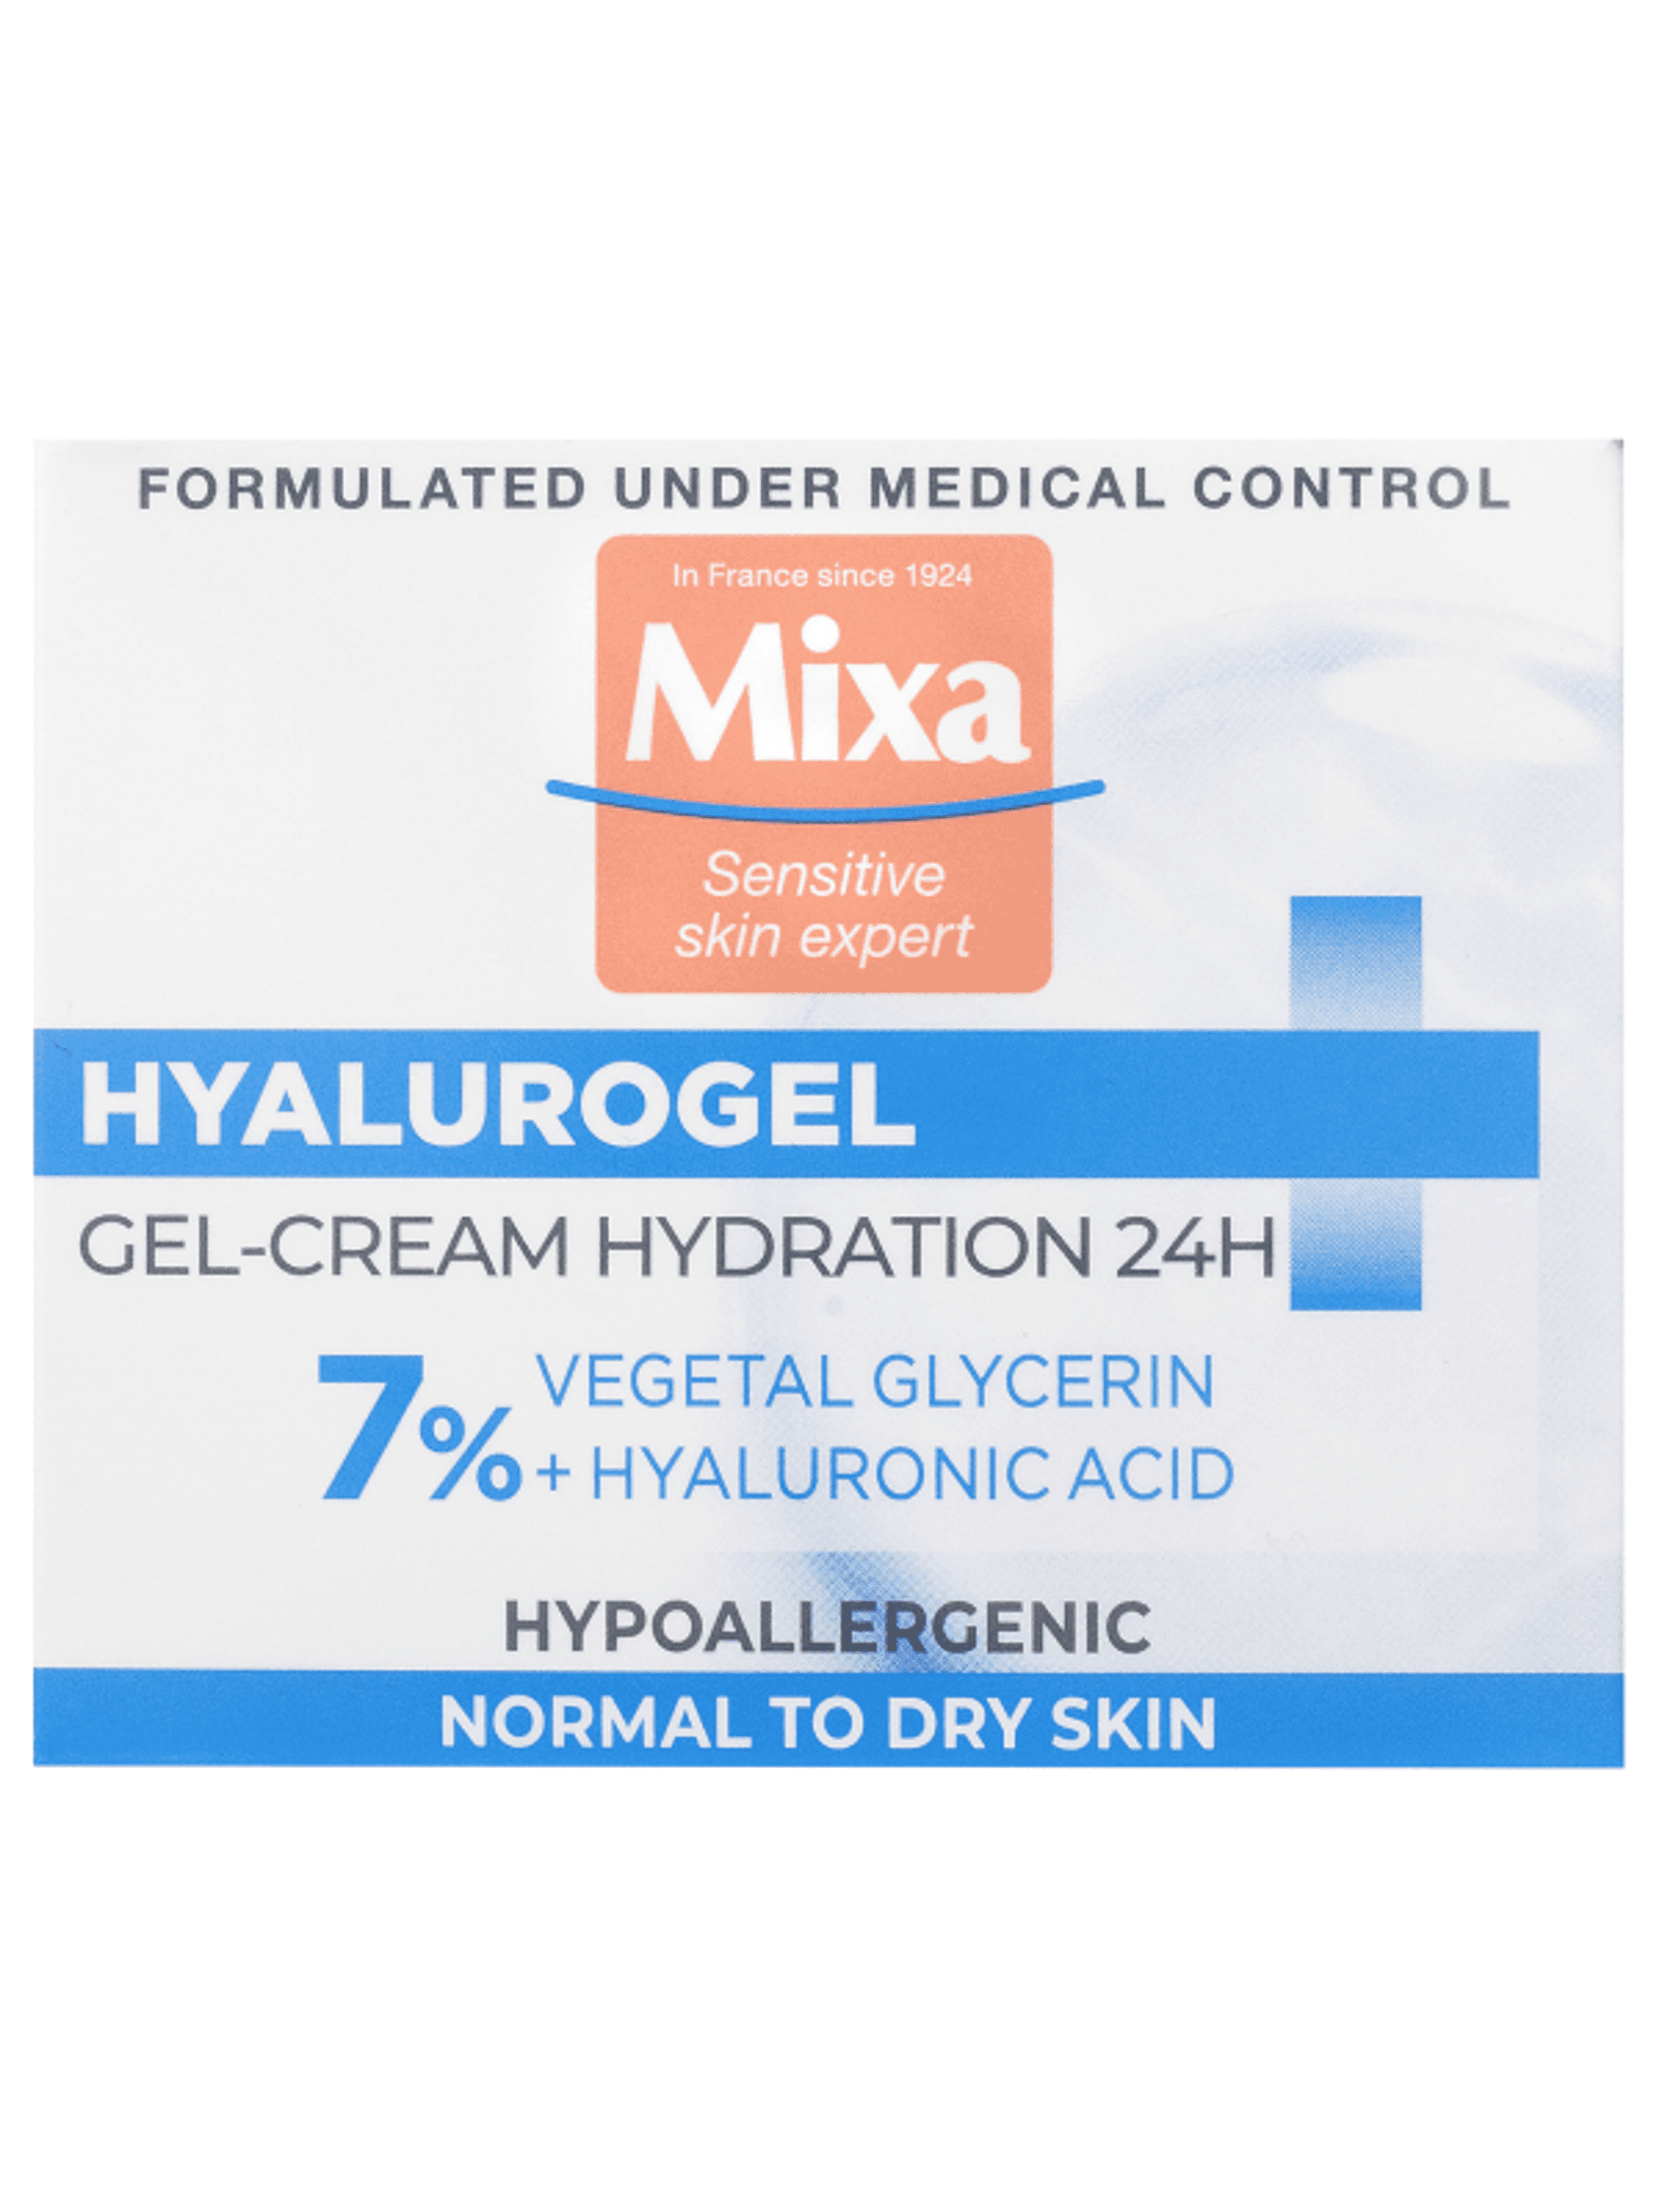 Mixa Hyalurogel intenzív hidratáló krém (7%) érzékeny és dehidratált bőrre - 50 ml-4